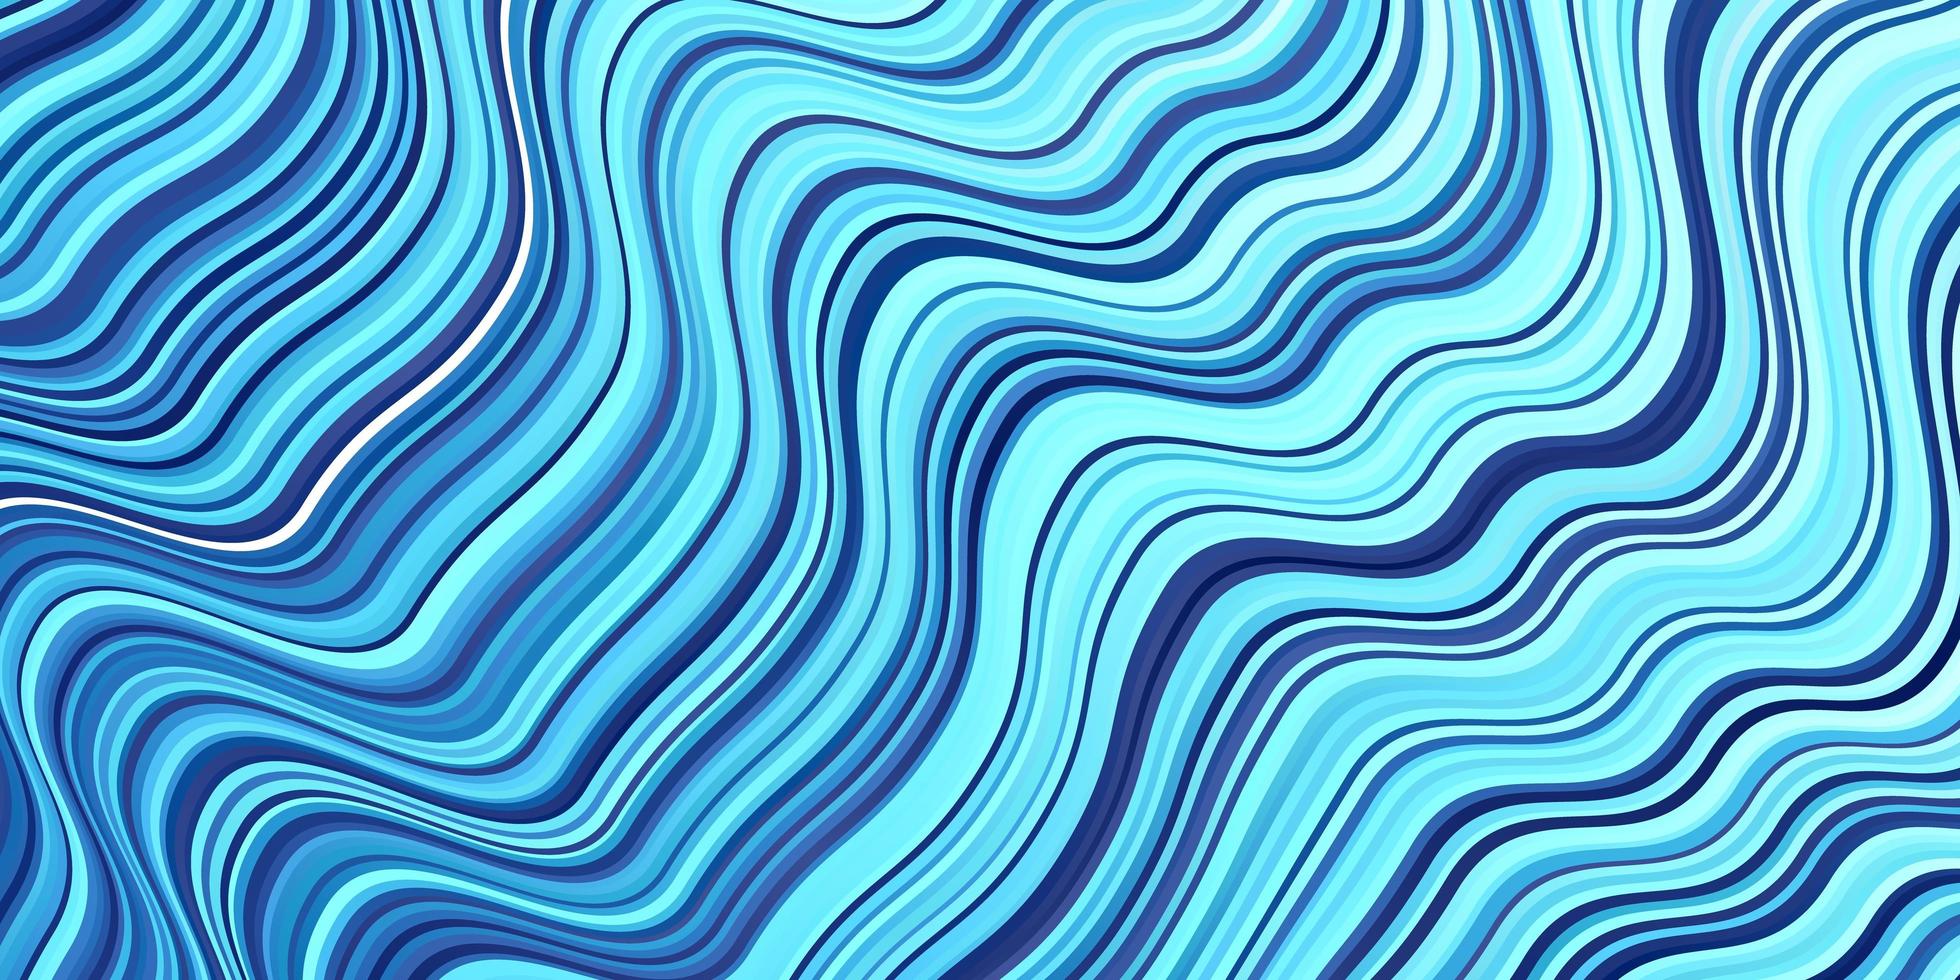 sfondo vettoriale azzurro con arco circolare